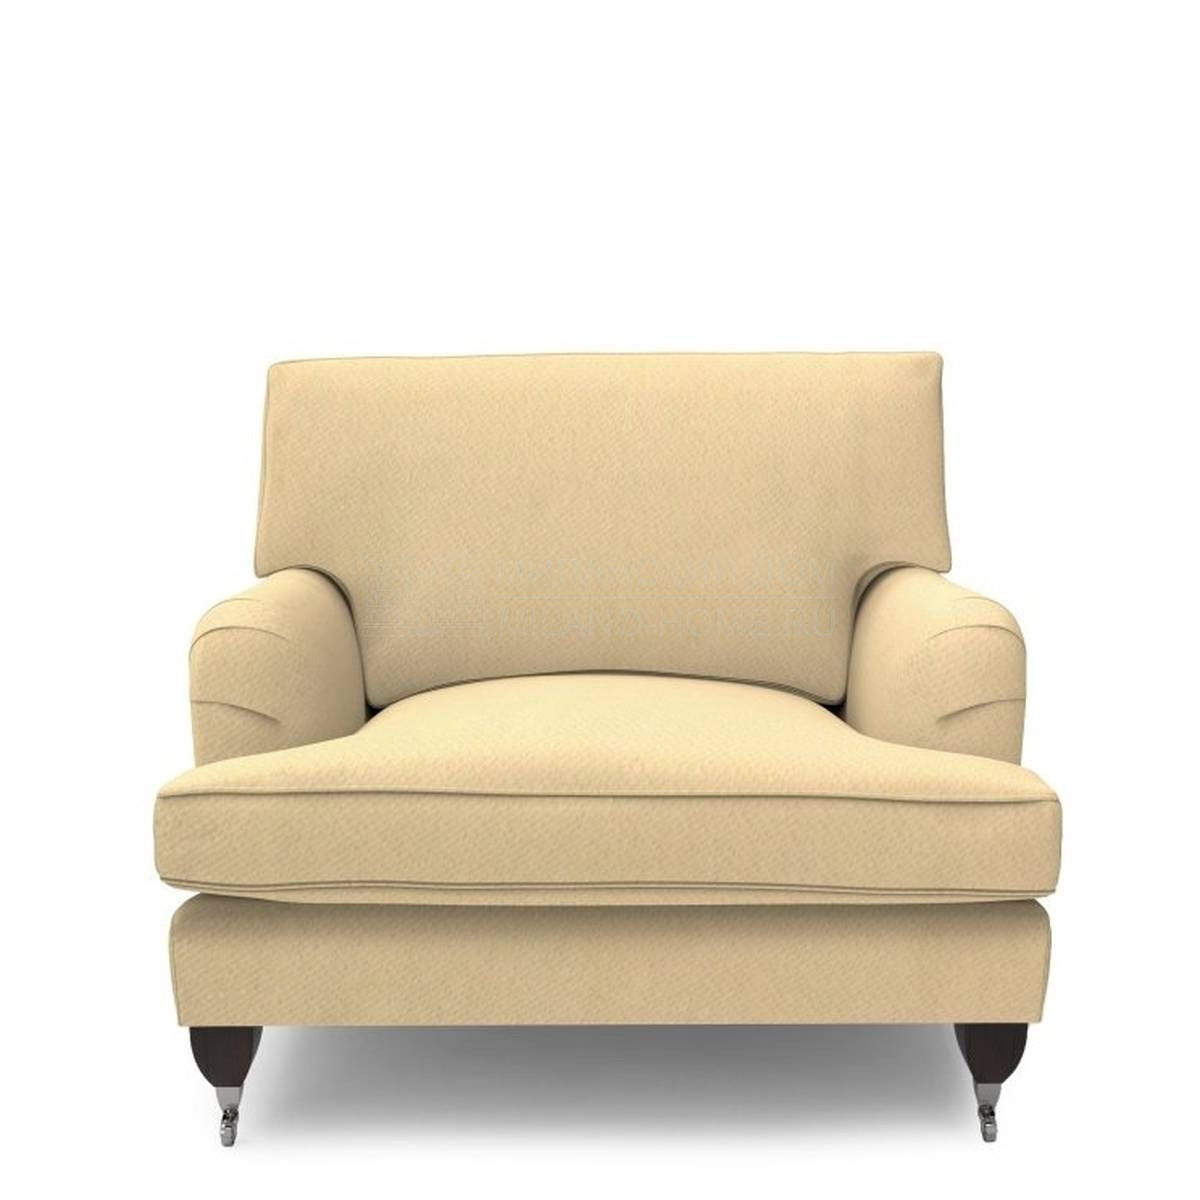 Кресло Daisy armchair из Италии фабрики MARIONI